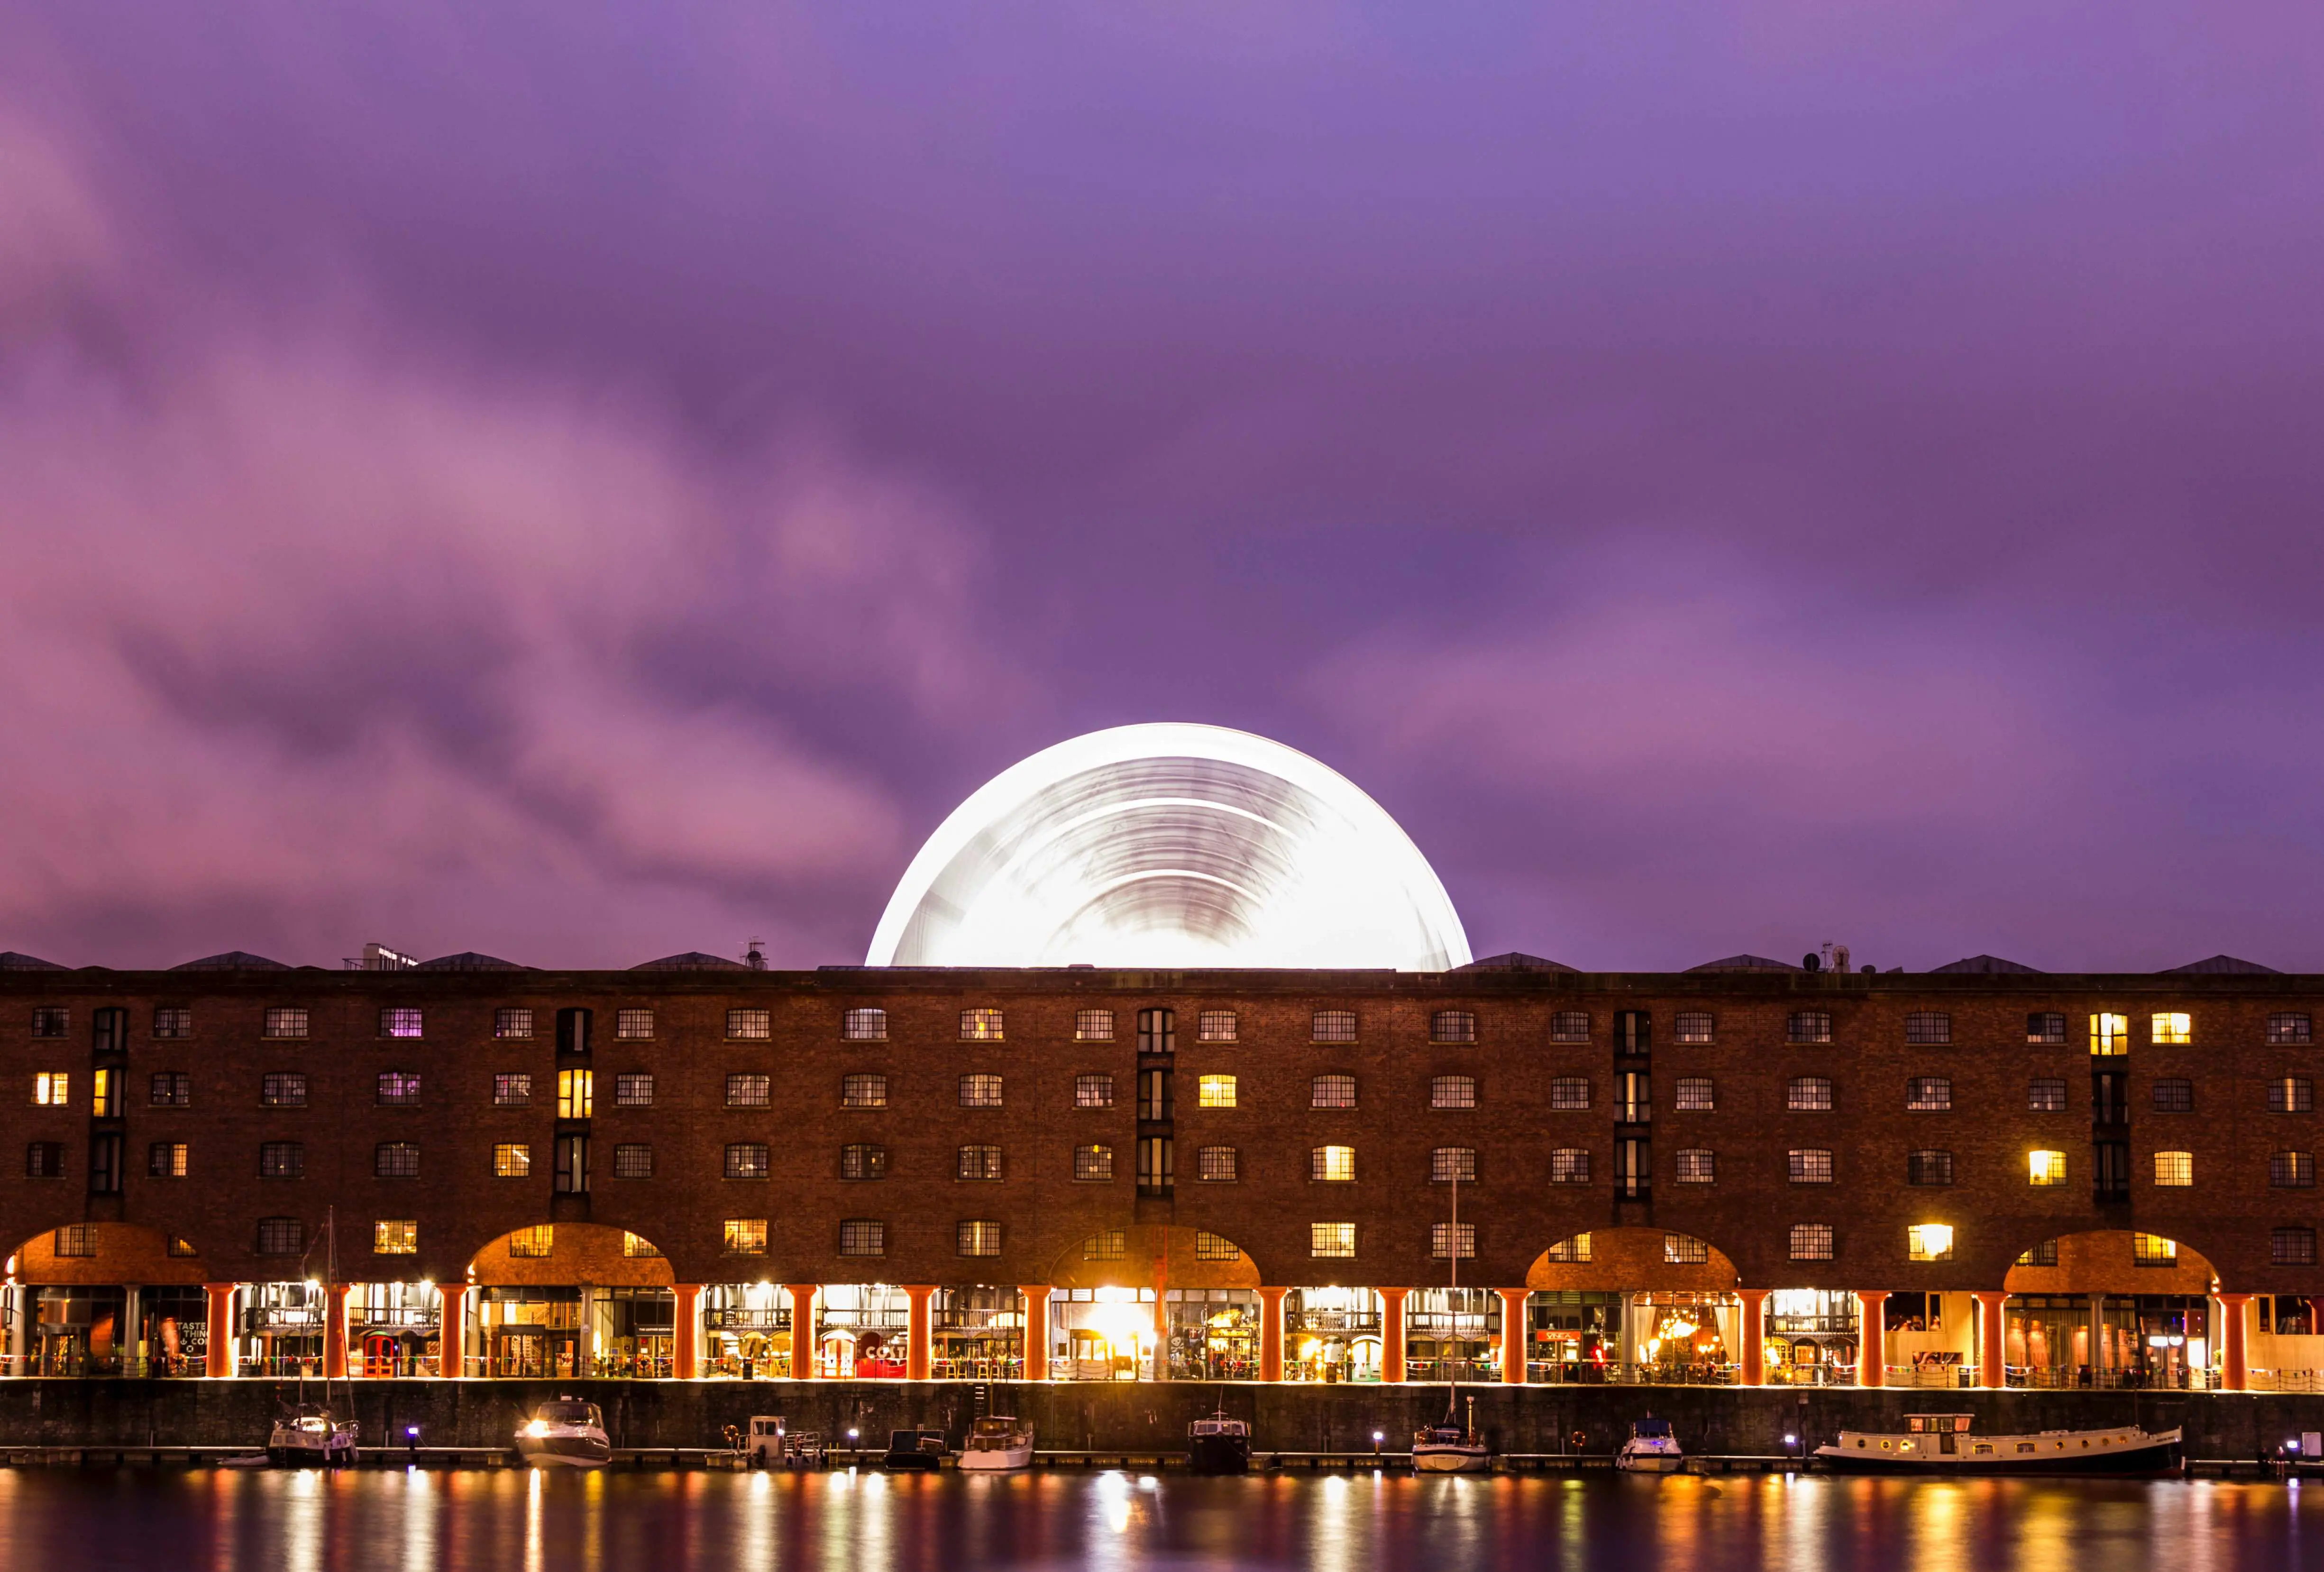 Liverpool - Albert Dock Tate Museum